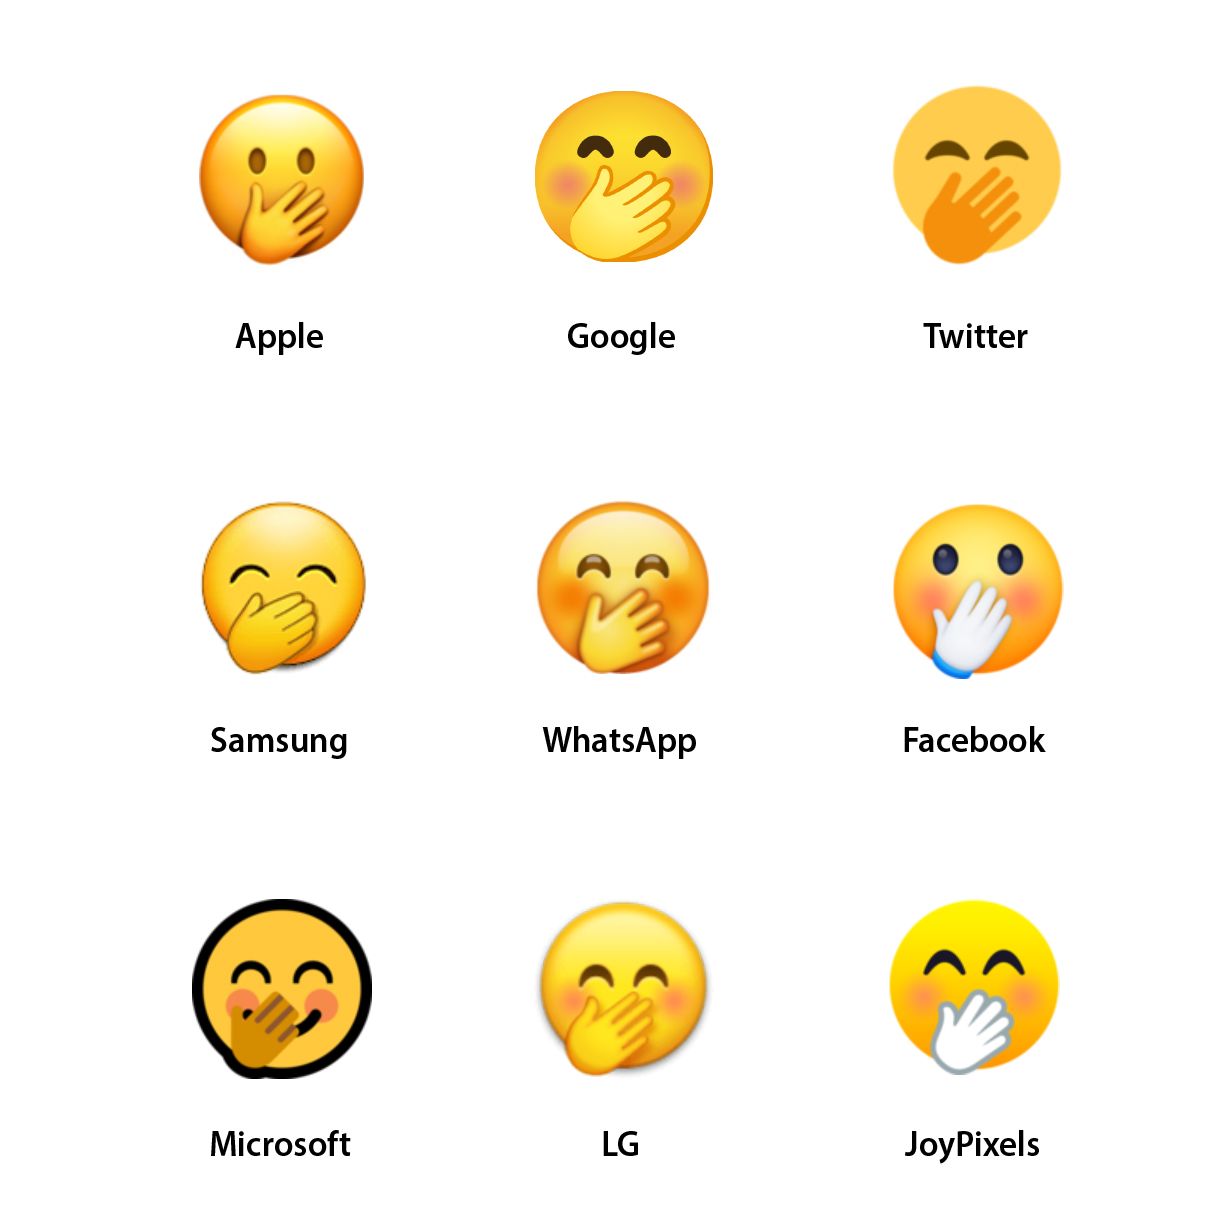 Emojipedia-Vendor-Design-Comparison-Face-with-Hand-Over-Mouth-1